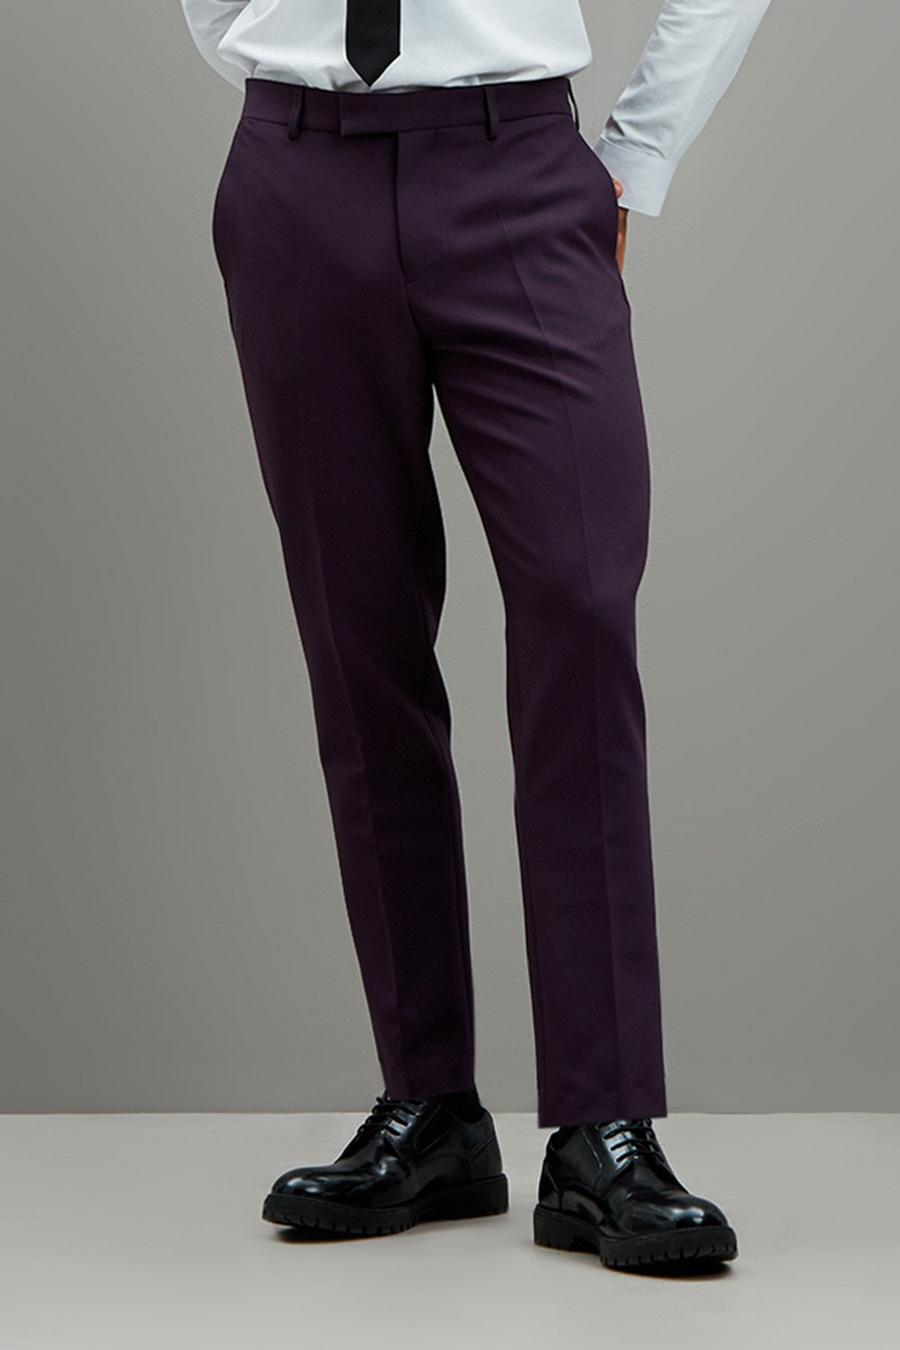 Skinny Fit Purple Tuxedo Trousers